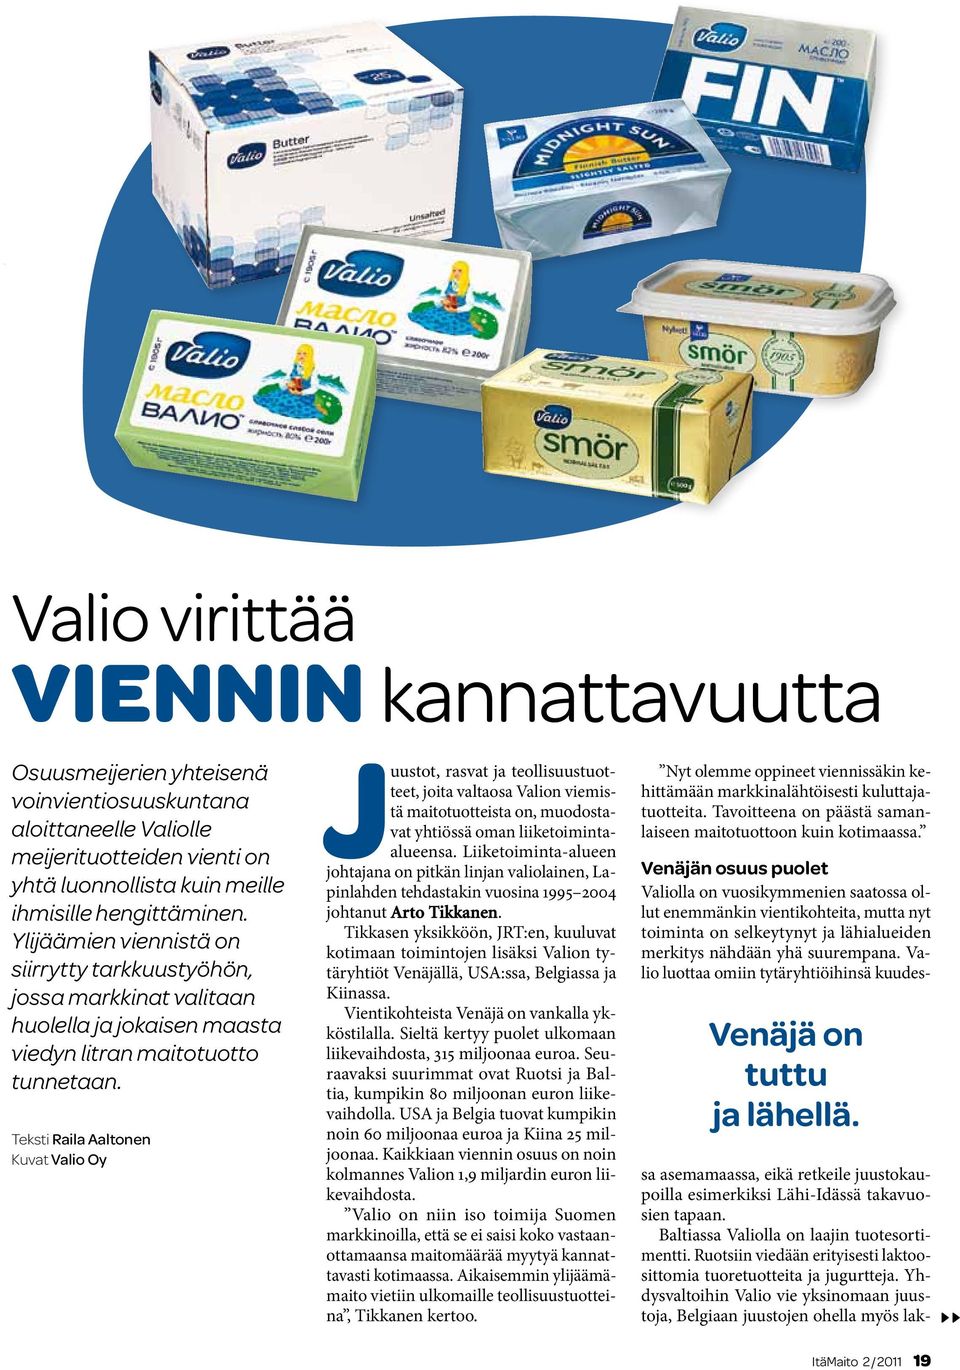 Teksti Raila Aaltonen Kuvat Valio Oy Juustot, rasvat ja teollisuustuotteet, joita valtaosa Valion viemistä maitotuotteista on, muodostavat yhtiössä oman liiketoimintaalueensa.